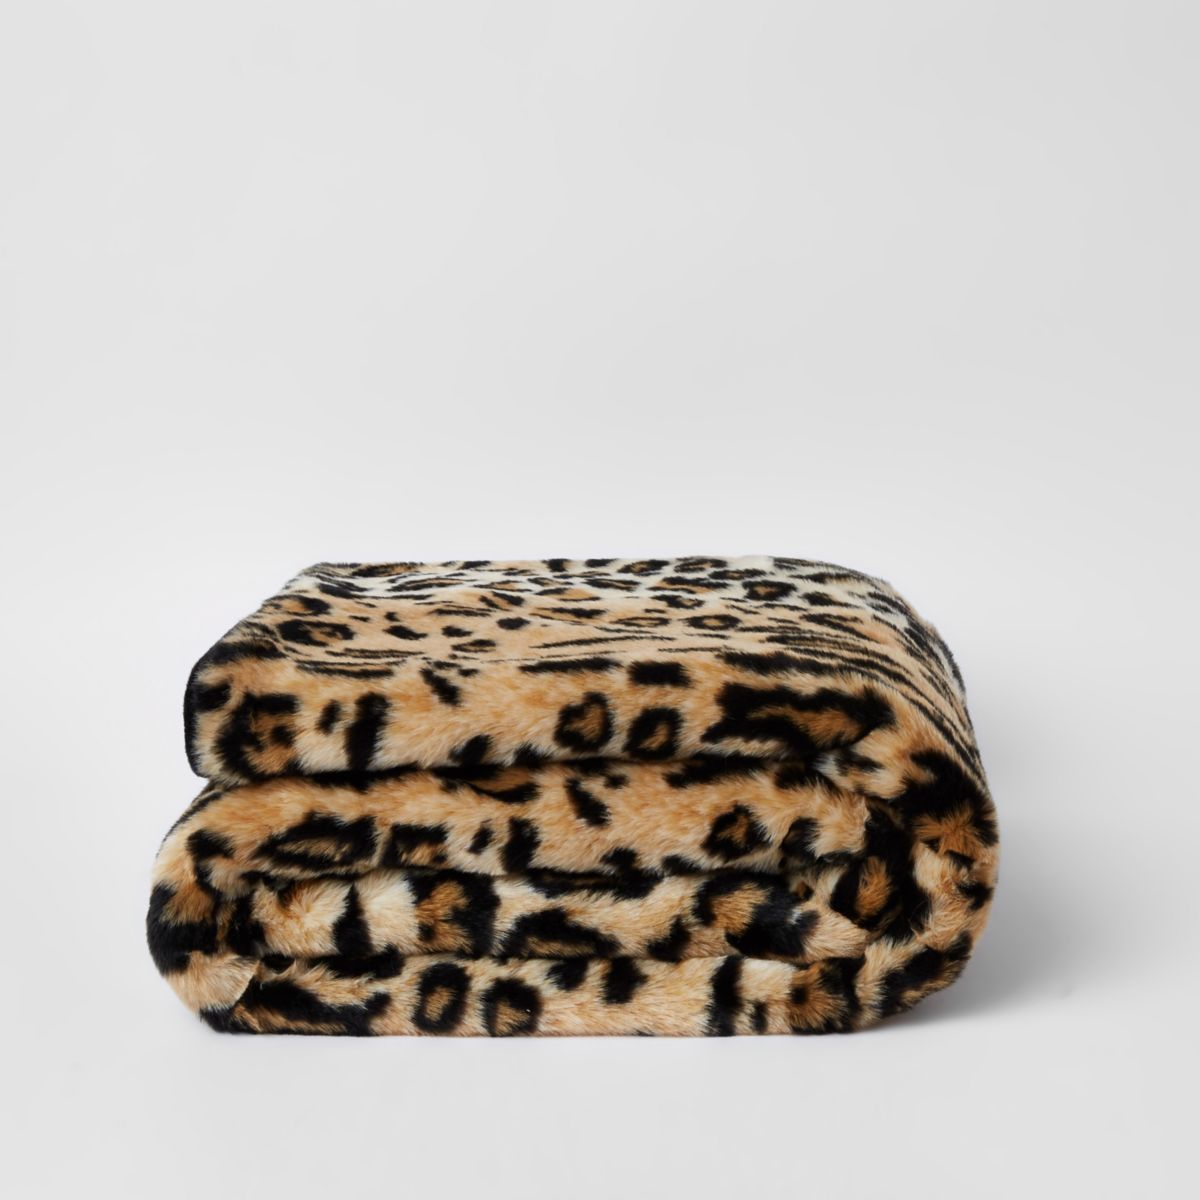 Leopard Faux Fur Throw, £55